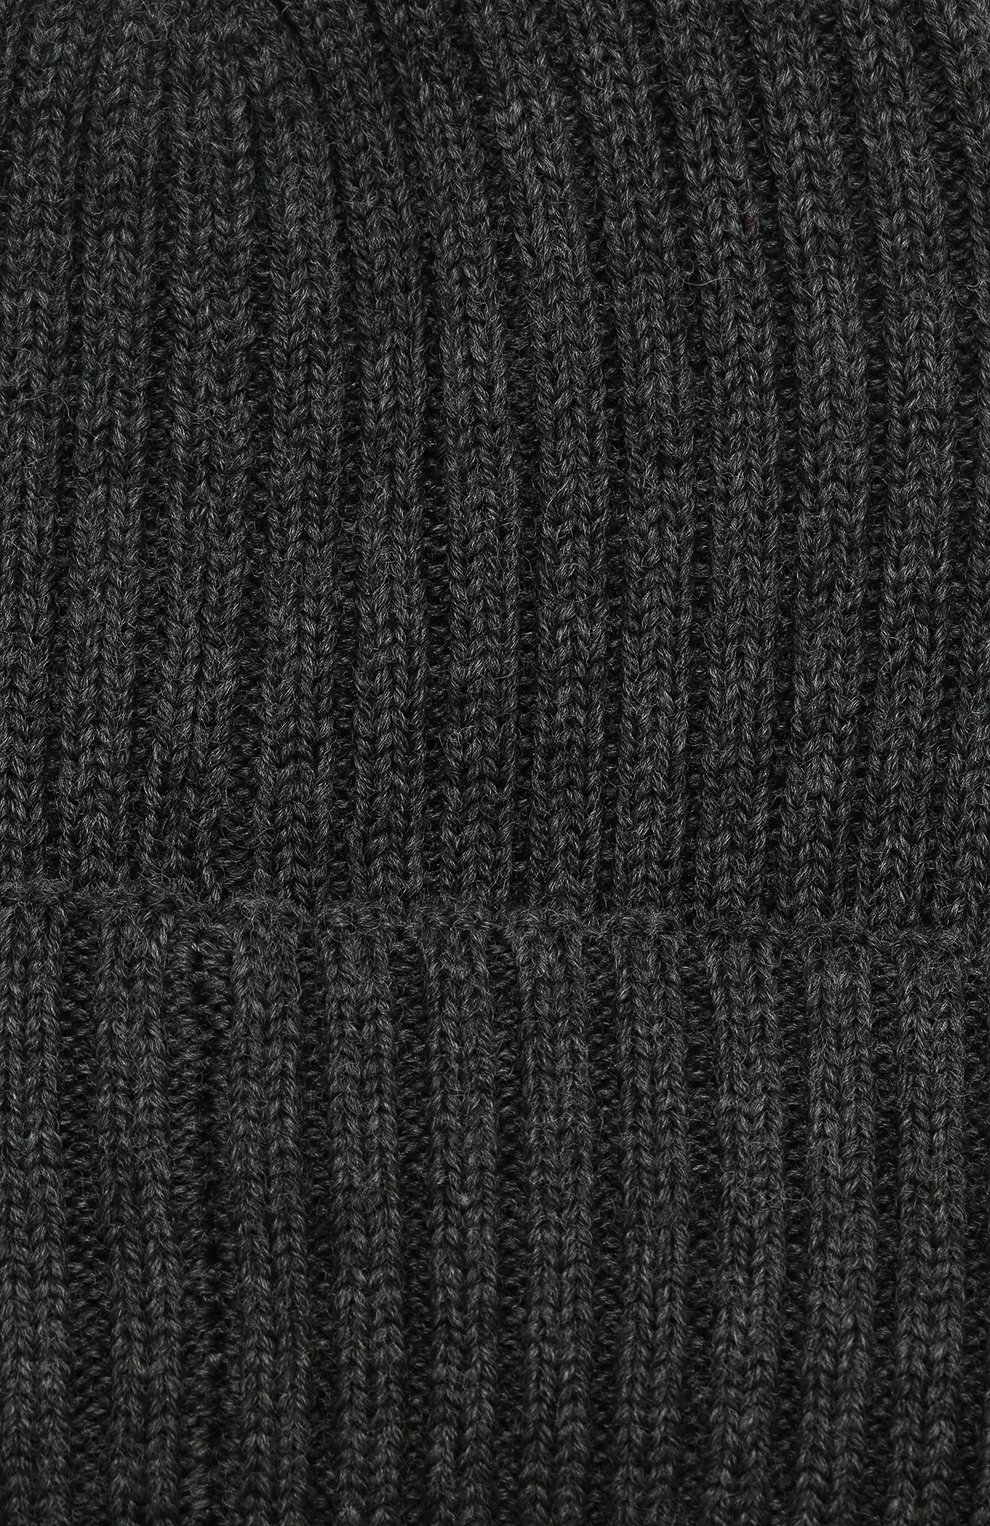 Мужская шерстяная шапка с логотипом бренда MONCLER серого цвета, арт. D2-091-00299-00-02309 | Фото 3 (Материал: Текстиль, Шерсть; Кросс-КТ: Трикотаж)